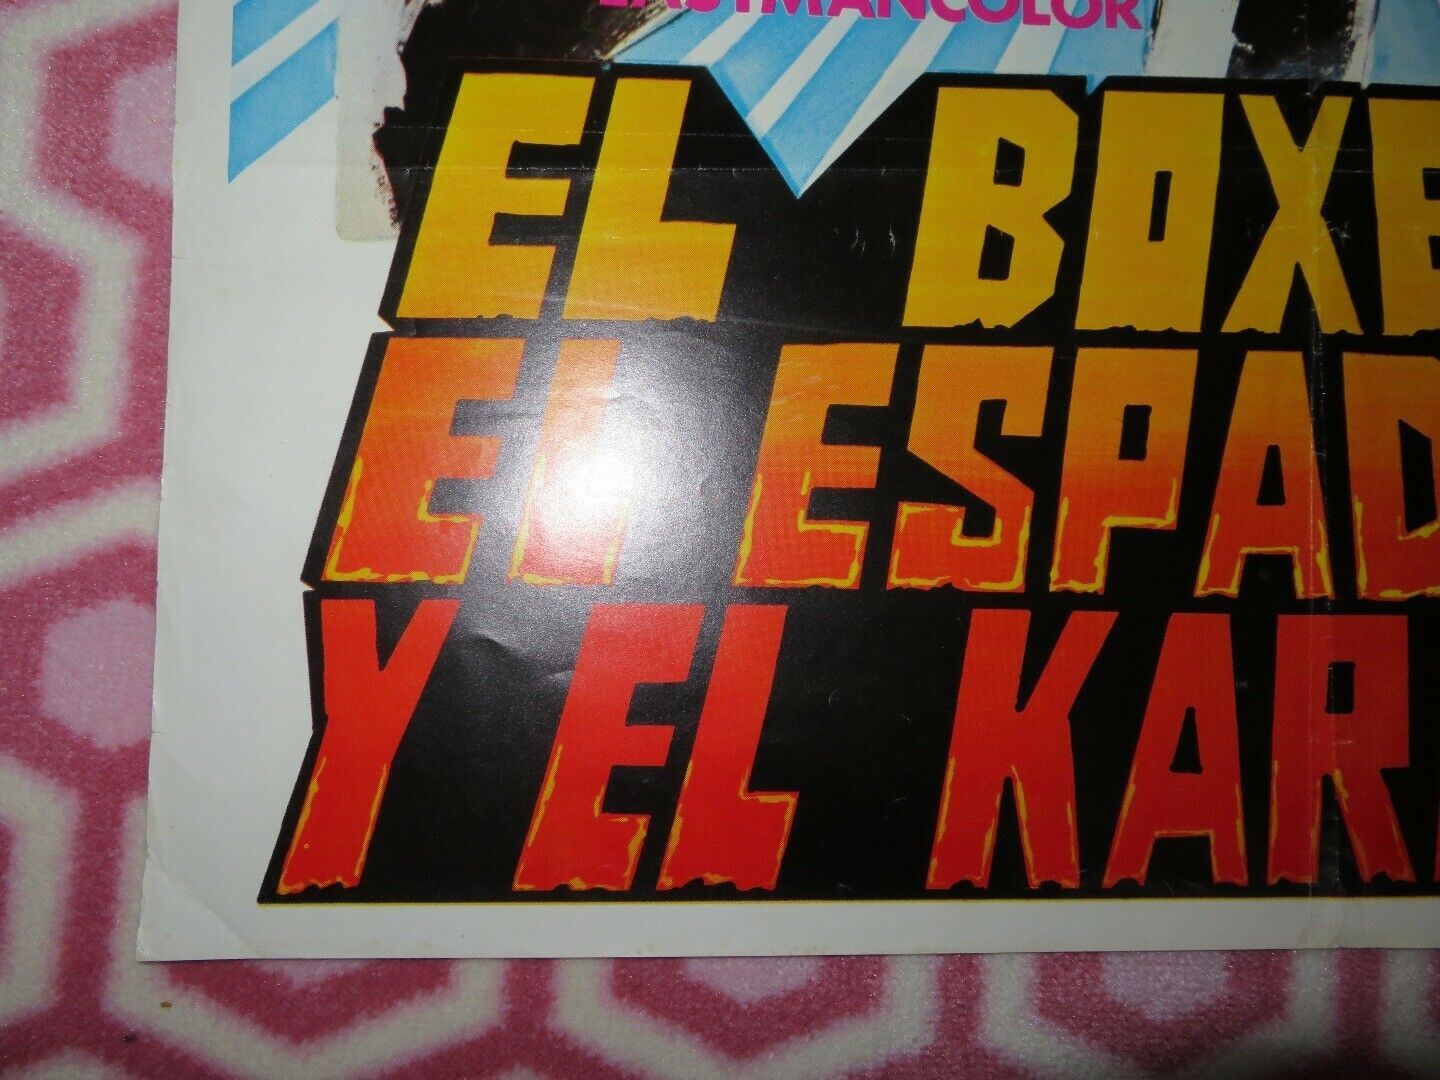 EL BOXEADOR EL ESPADACHIN Y EL KARATISTA (30.5"X 21") ROLLED POSTER 1972